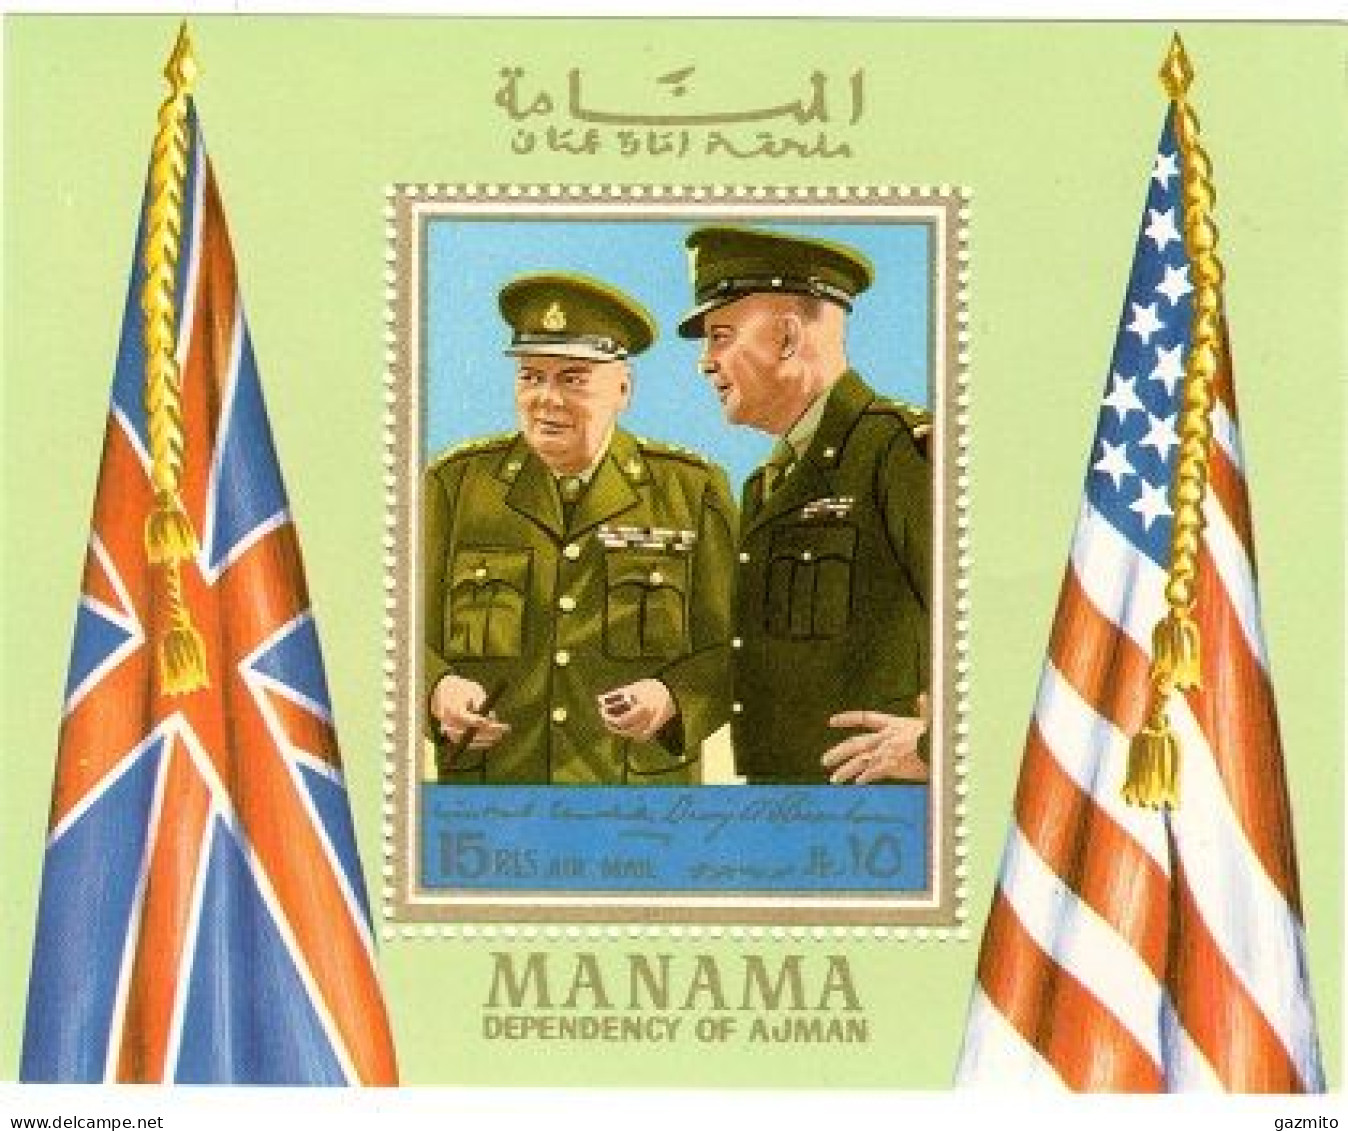 Manama 1972, WWII, Eisenhower, Churchill, BF - Manama